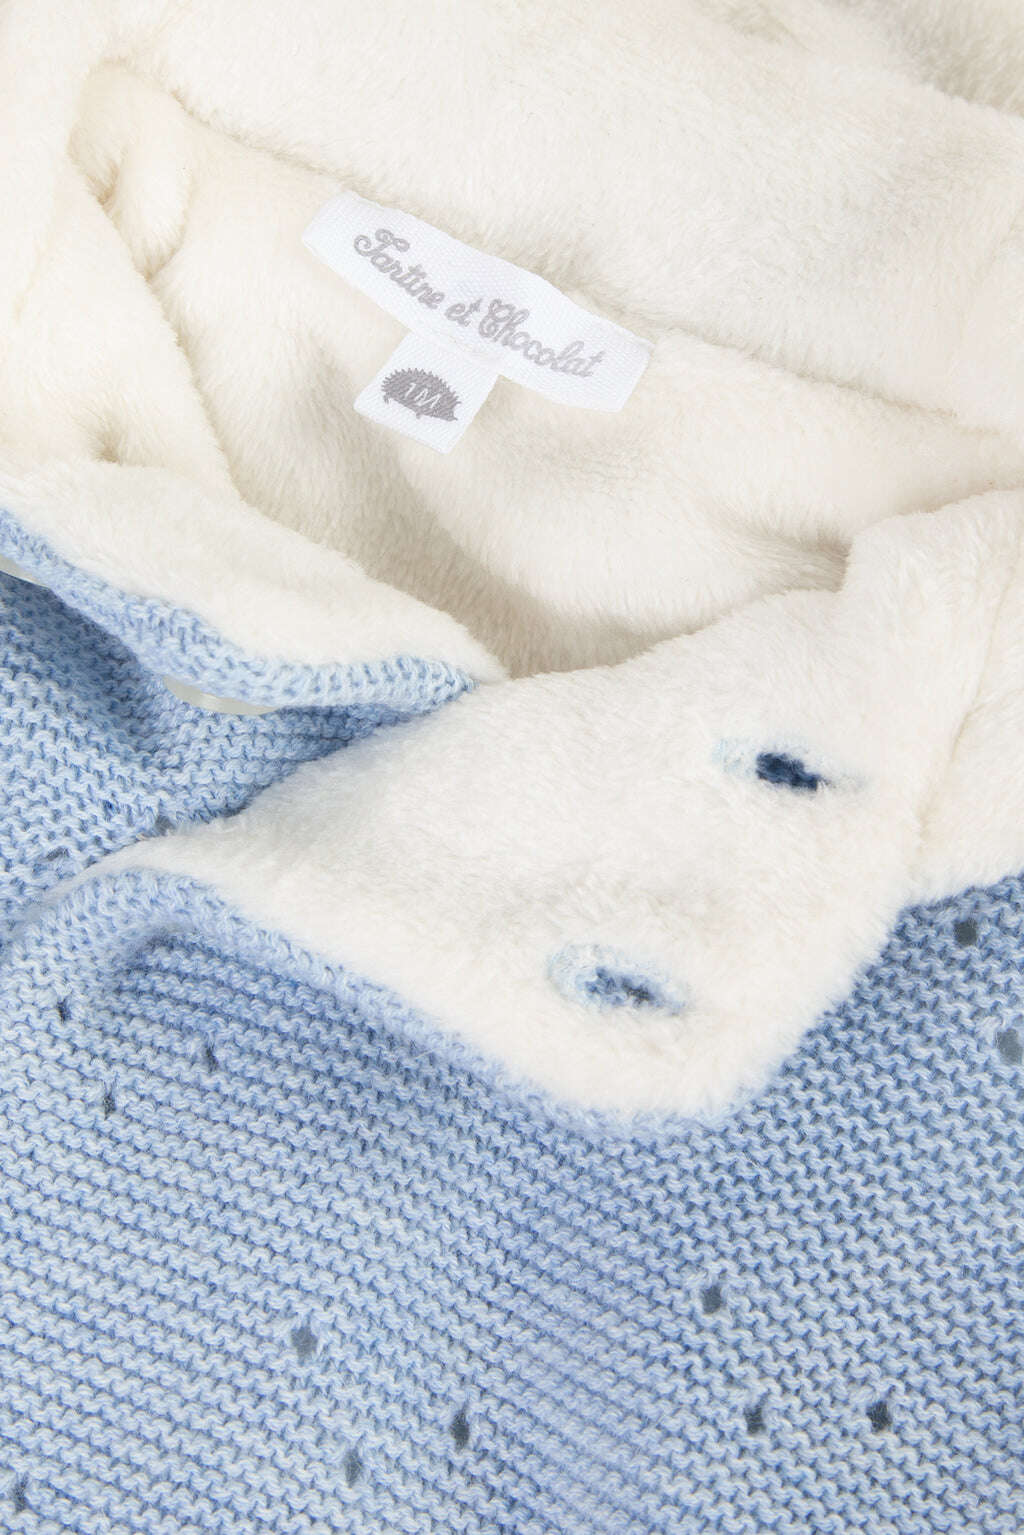 Coat - Sky blue knitting